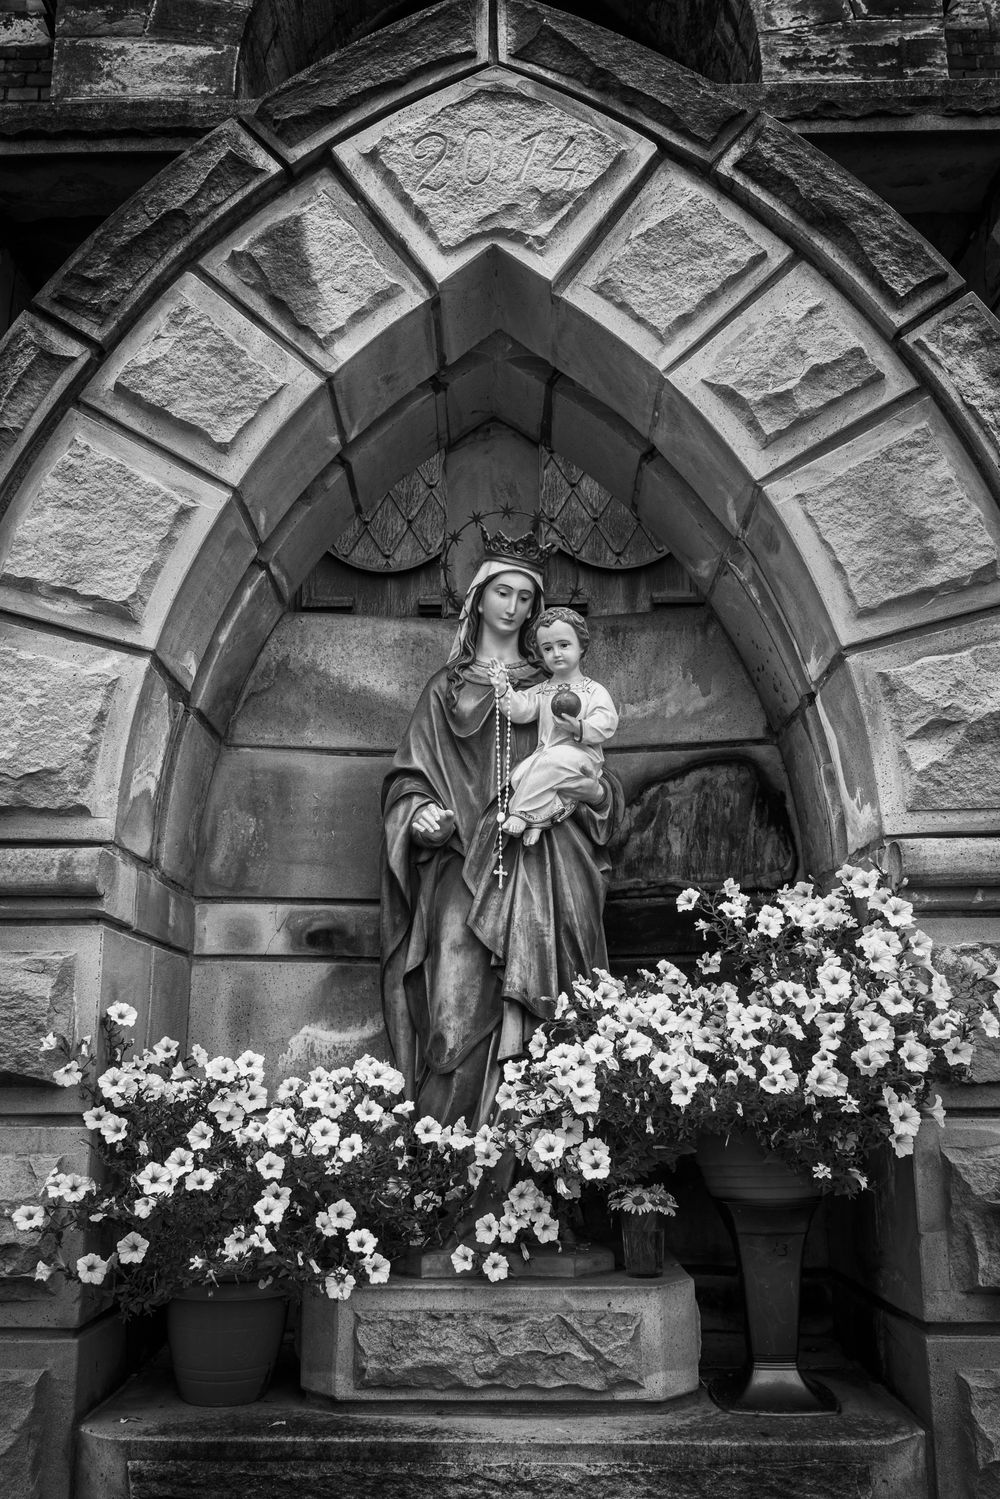 La Virgen María cargando a su bebé Jesús